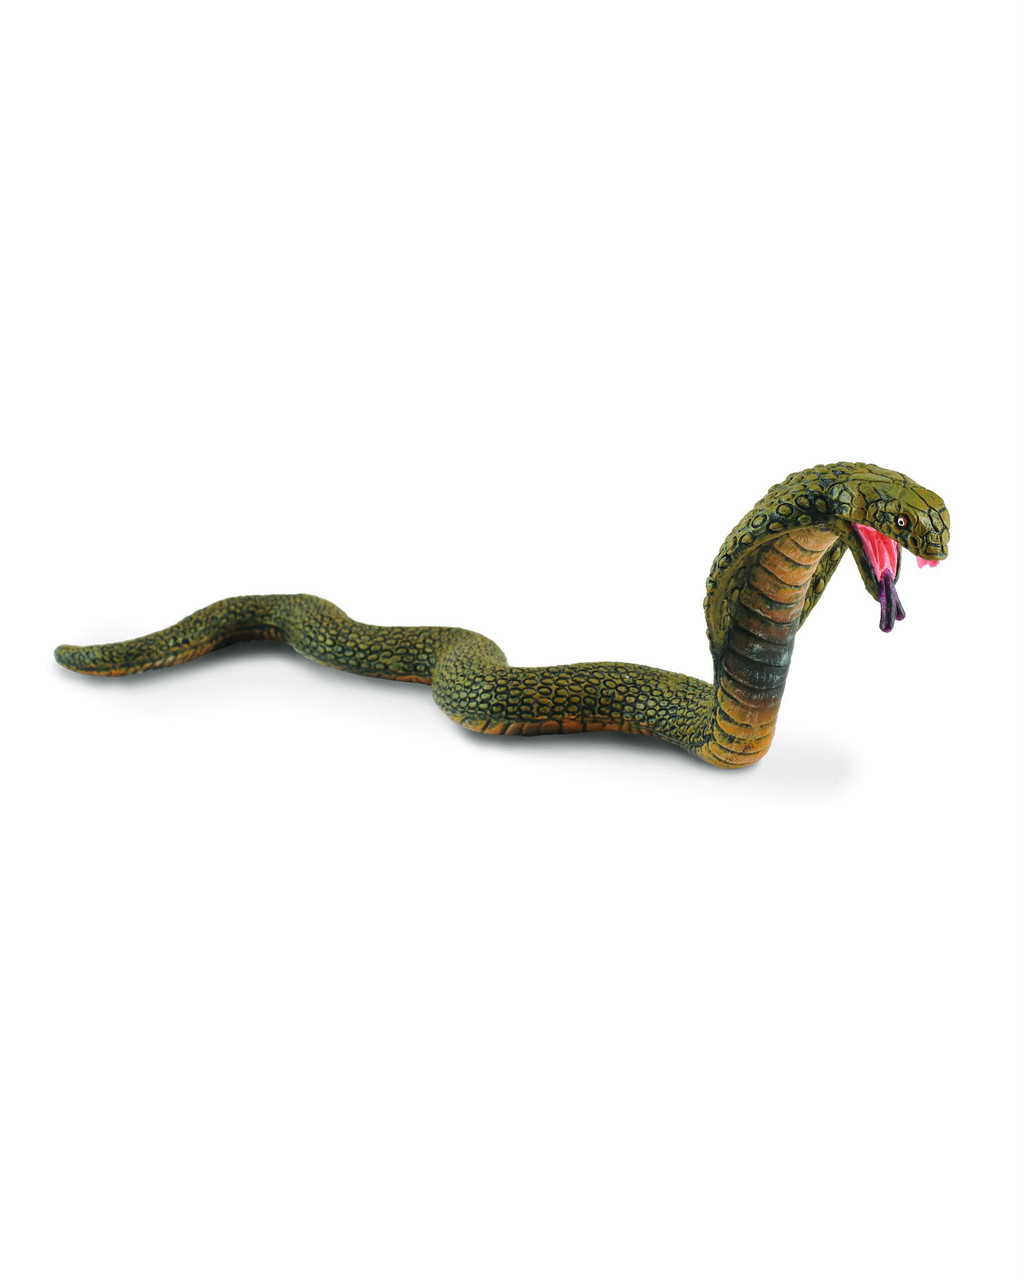 Collecta Фигурка Королевская кобра, 14.5 см